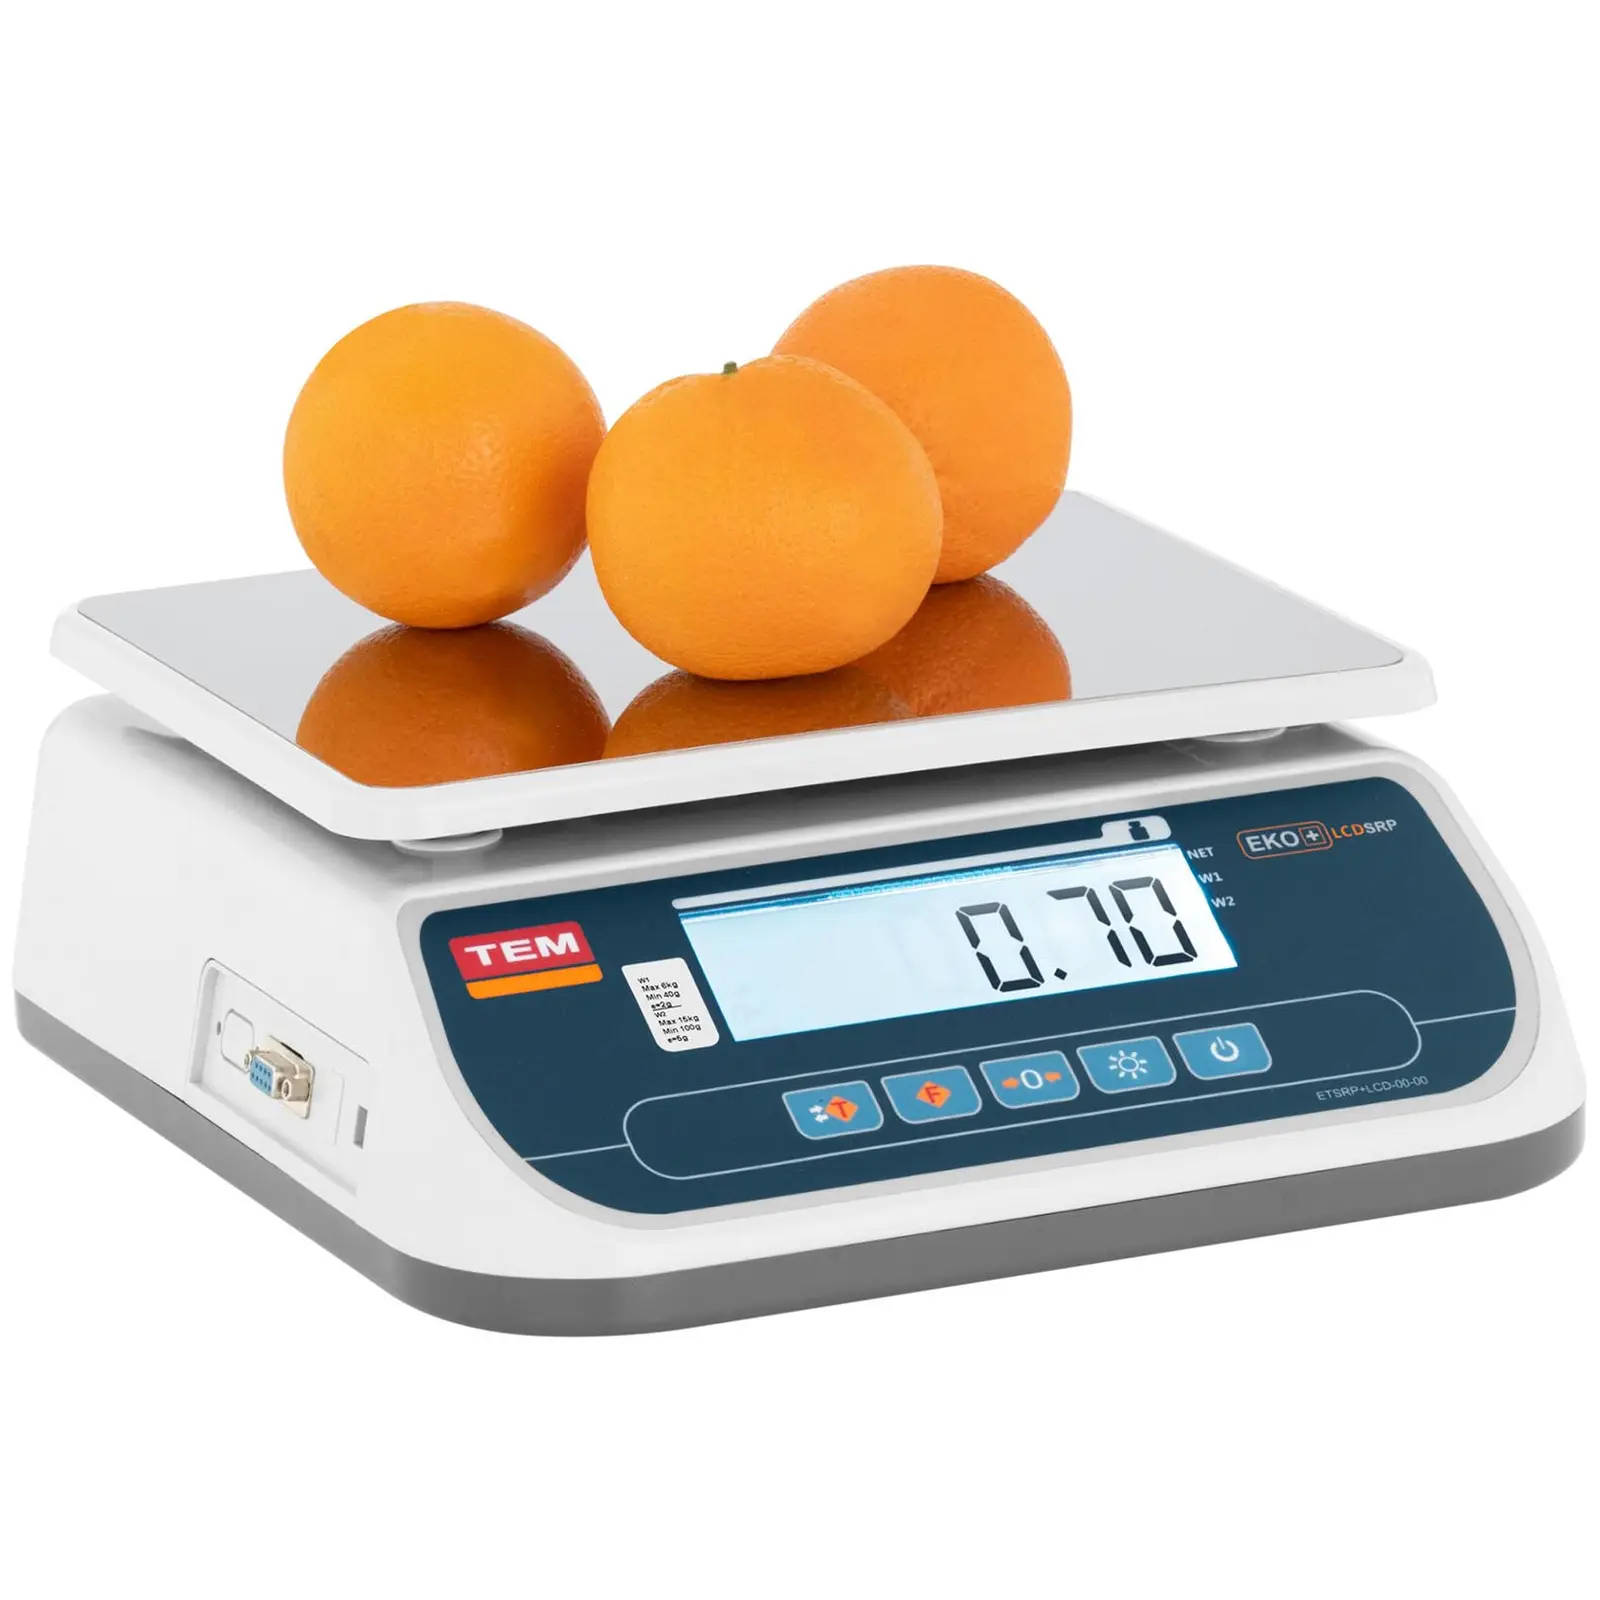 Balanza de mesa - calibrada - 15 kg / 5 g - LCD